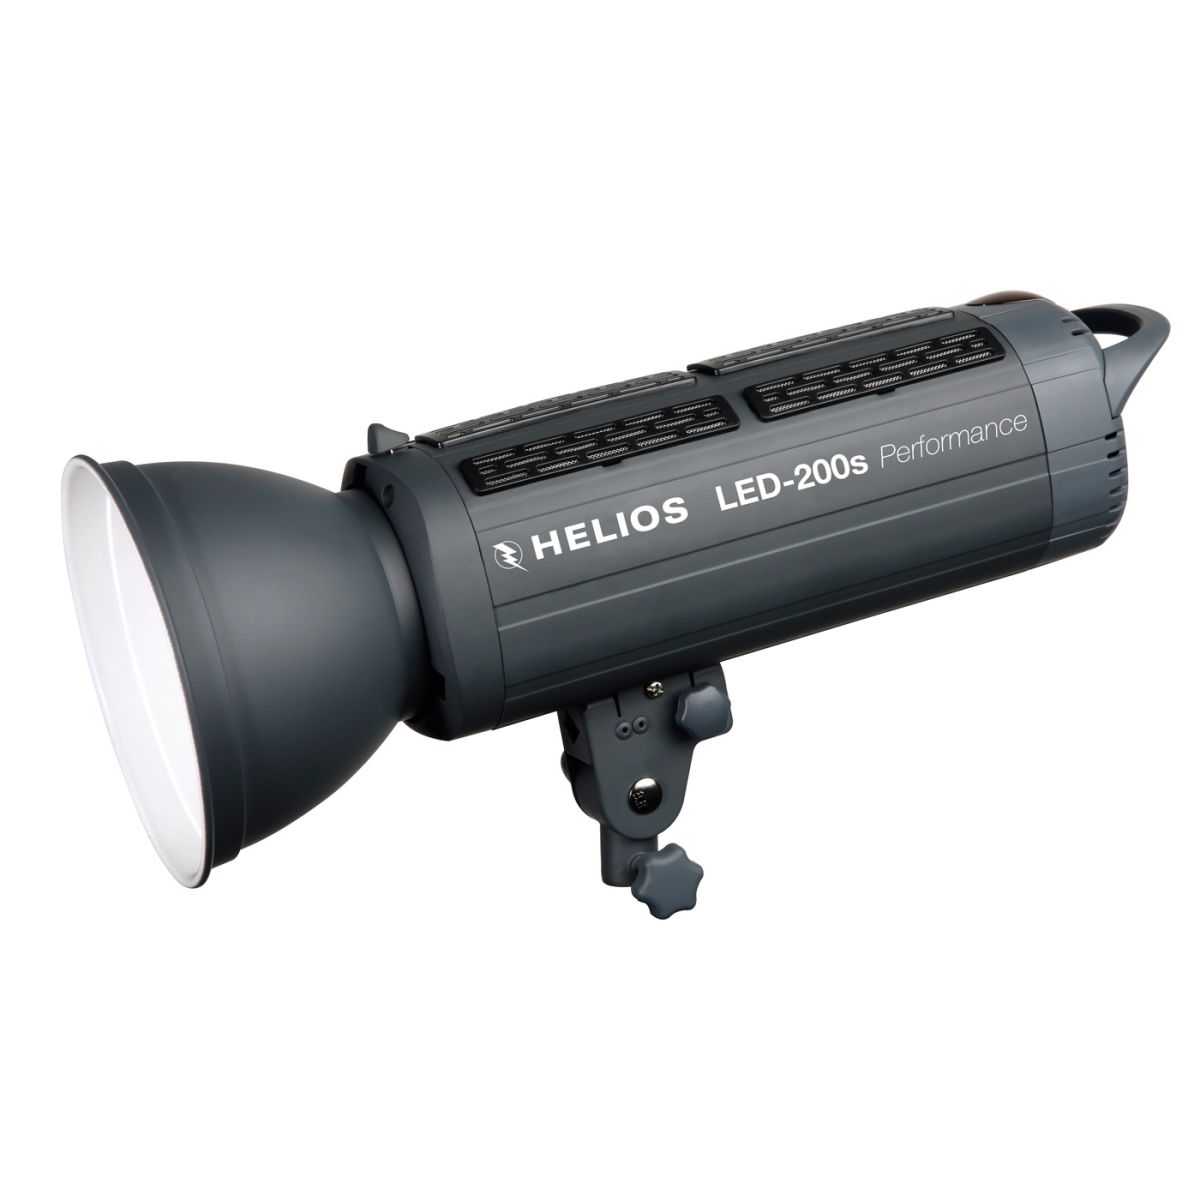 Helios LED-200s Performance Studioleuchte 2er-Set